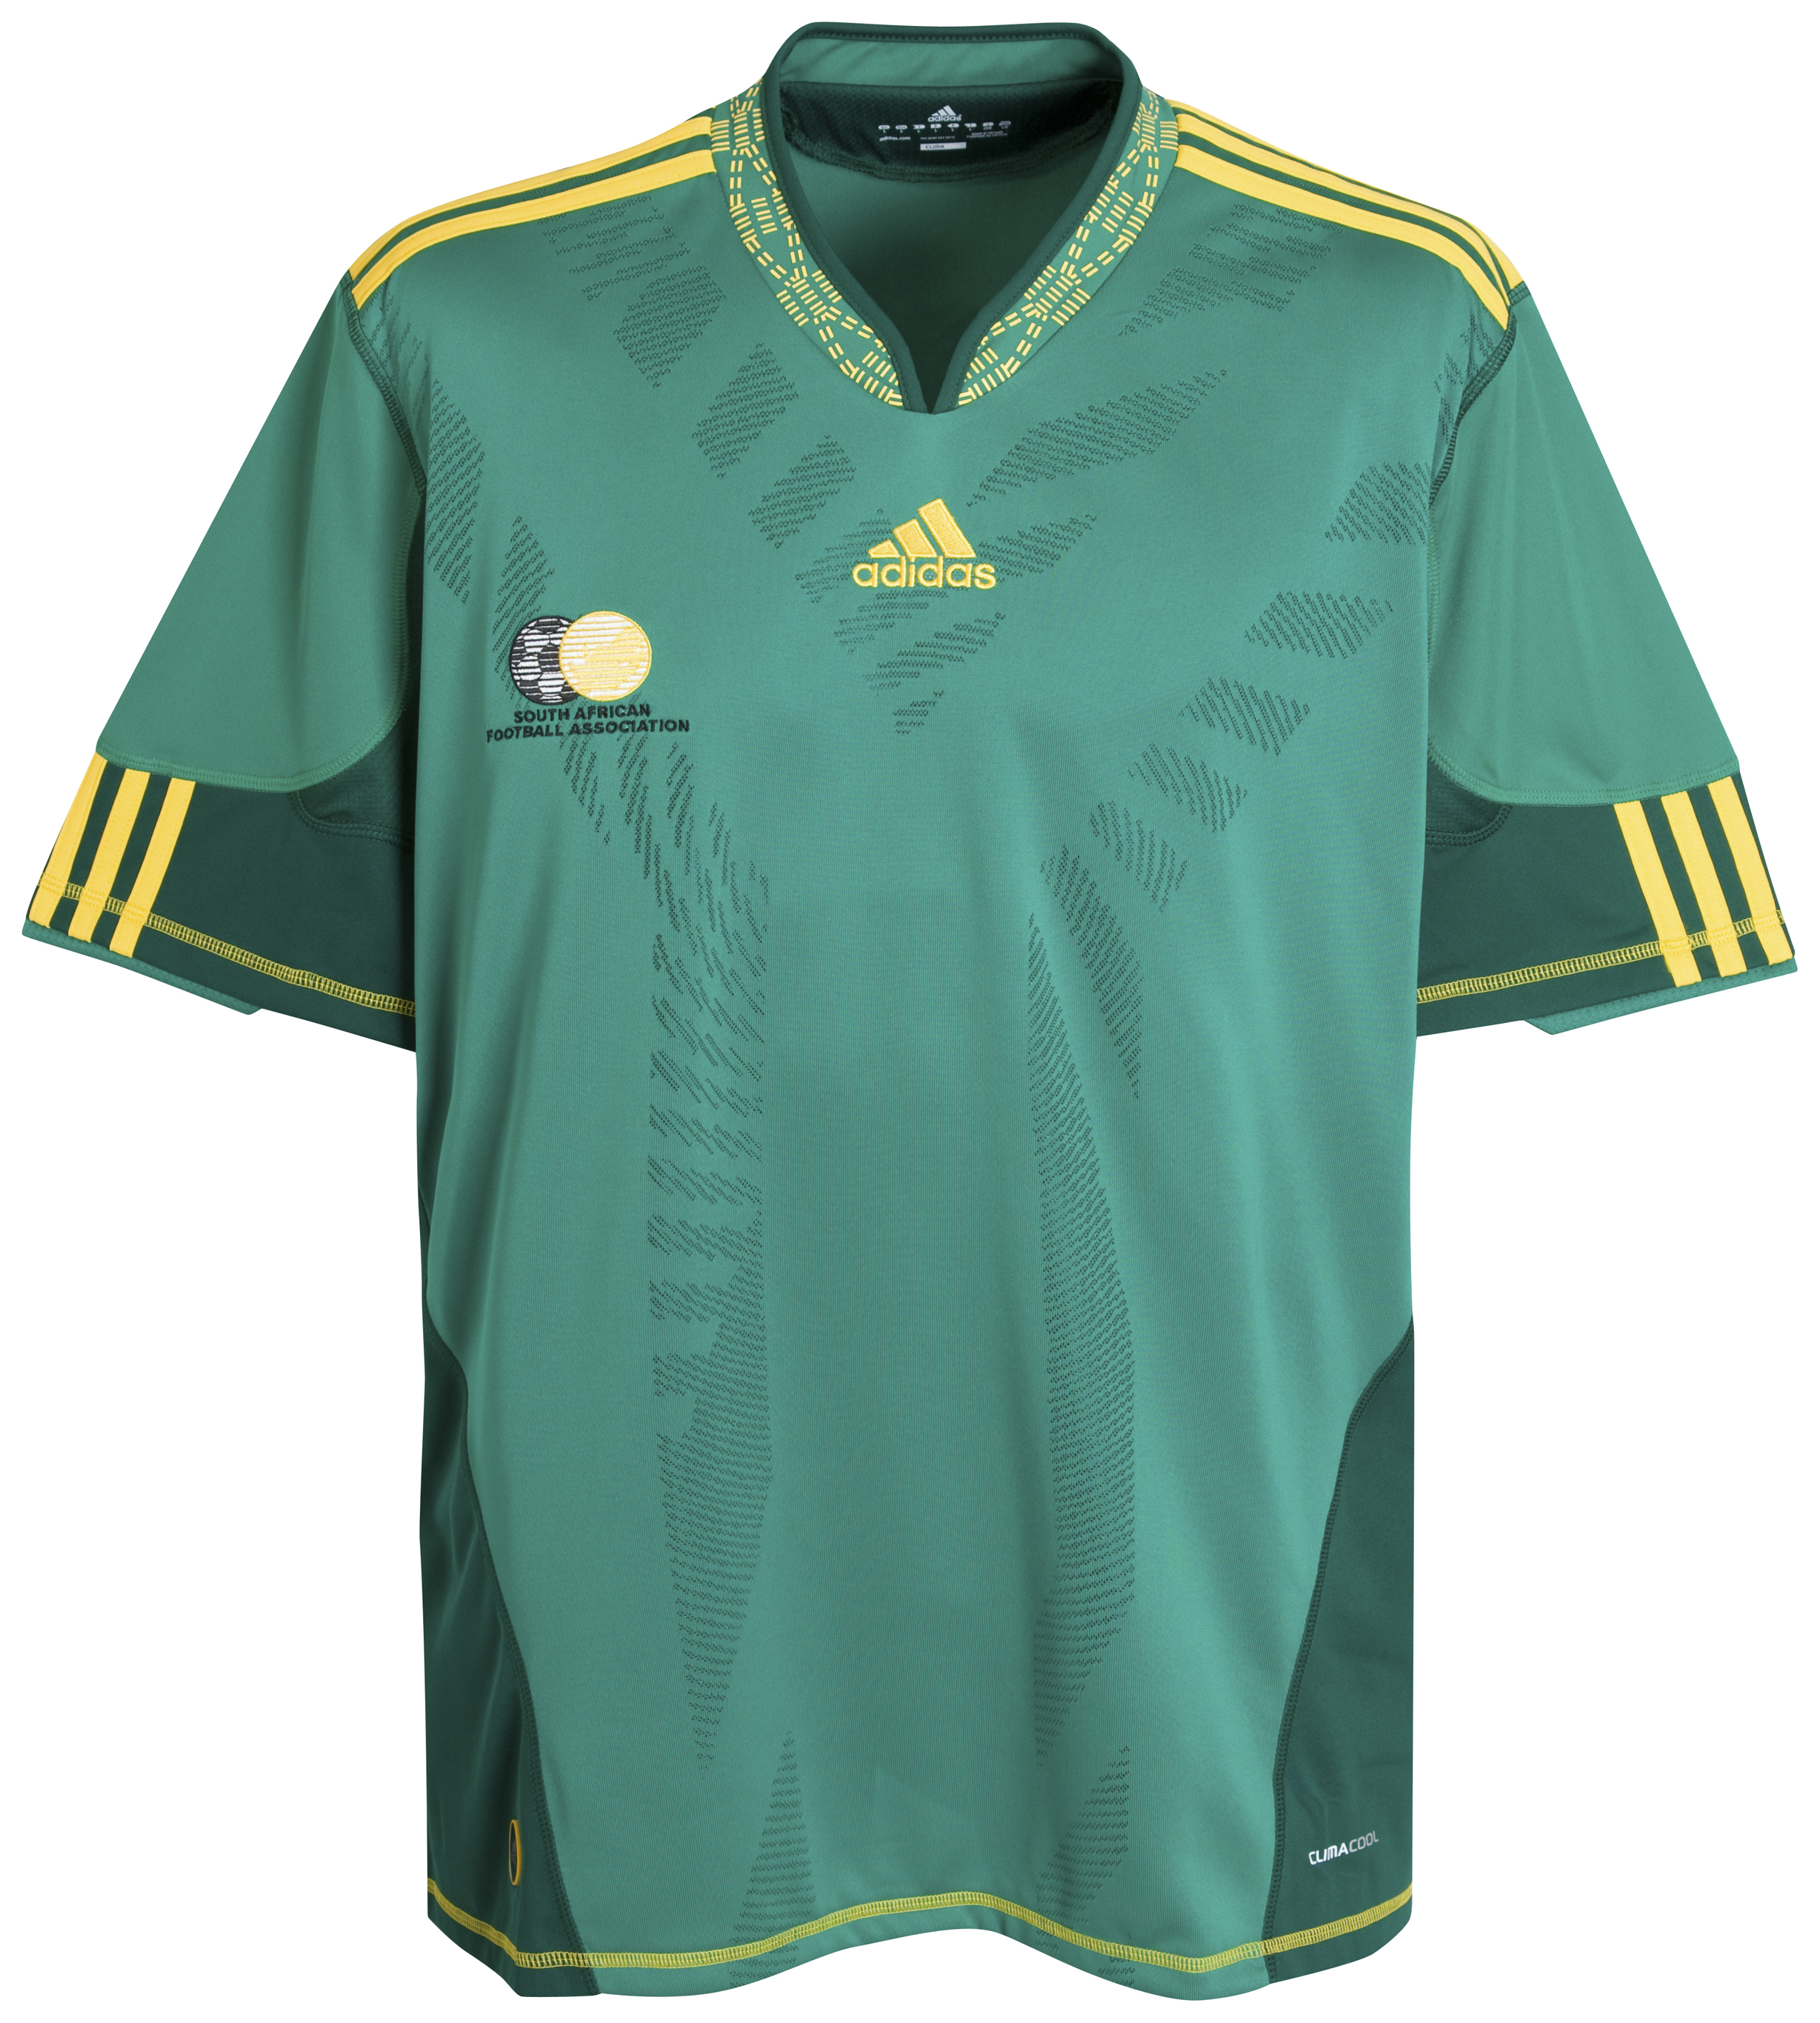 ملابس المنتخبات في كأس العالم 2010 Kb-66945